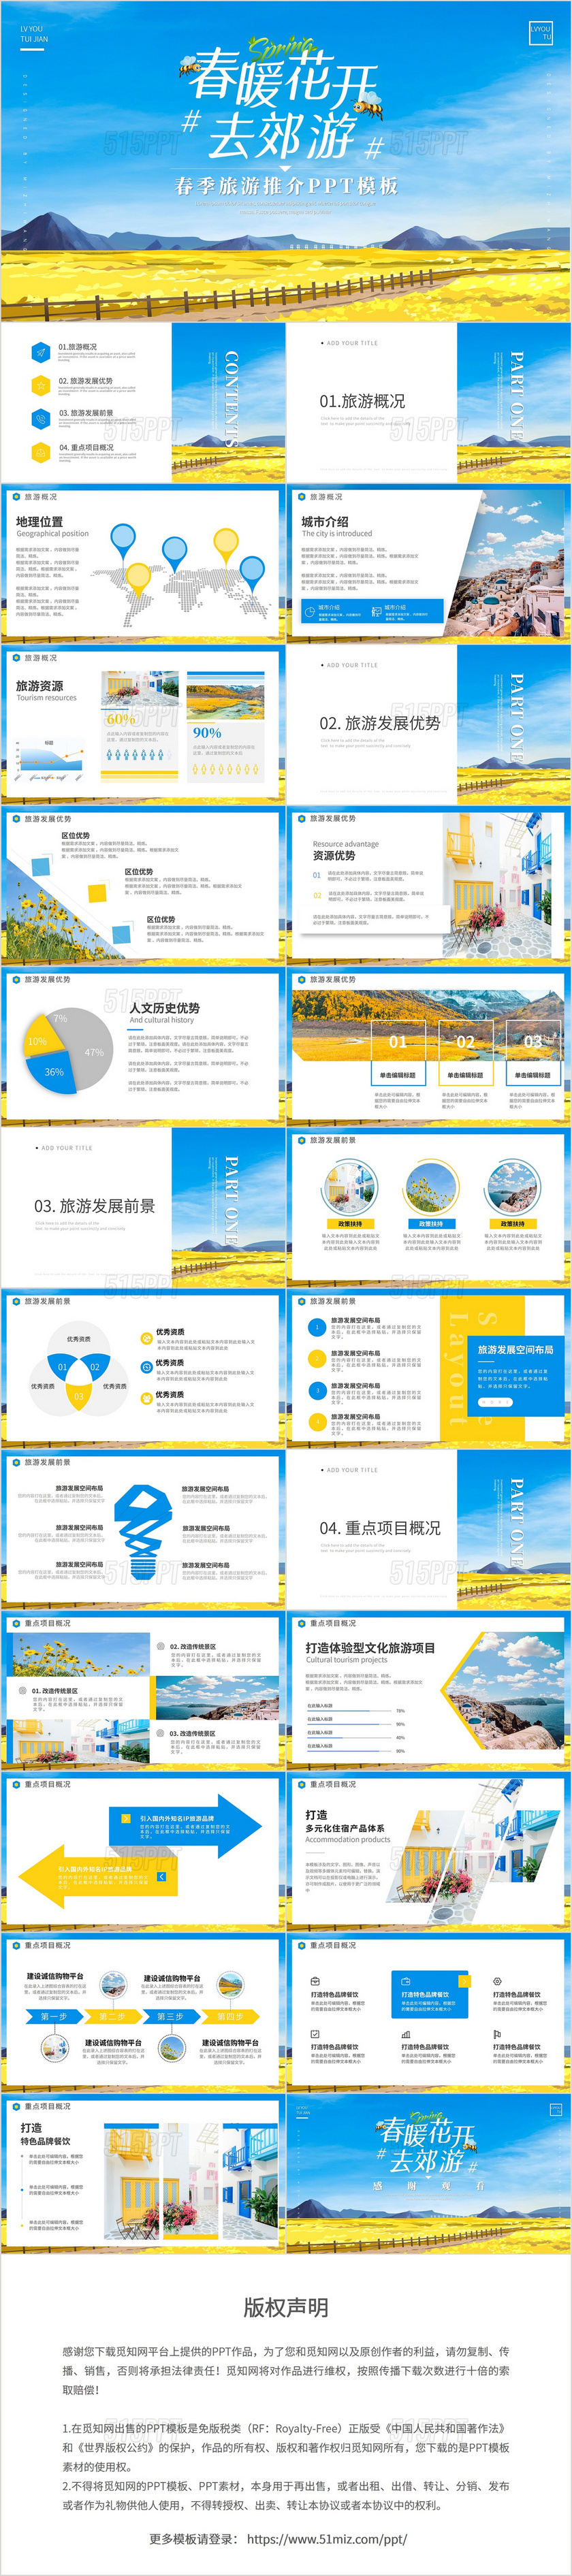 蓝黄色通用春季旅游推介旅行社营销策划计划PPT模板